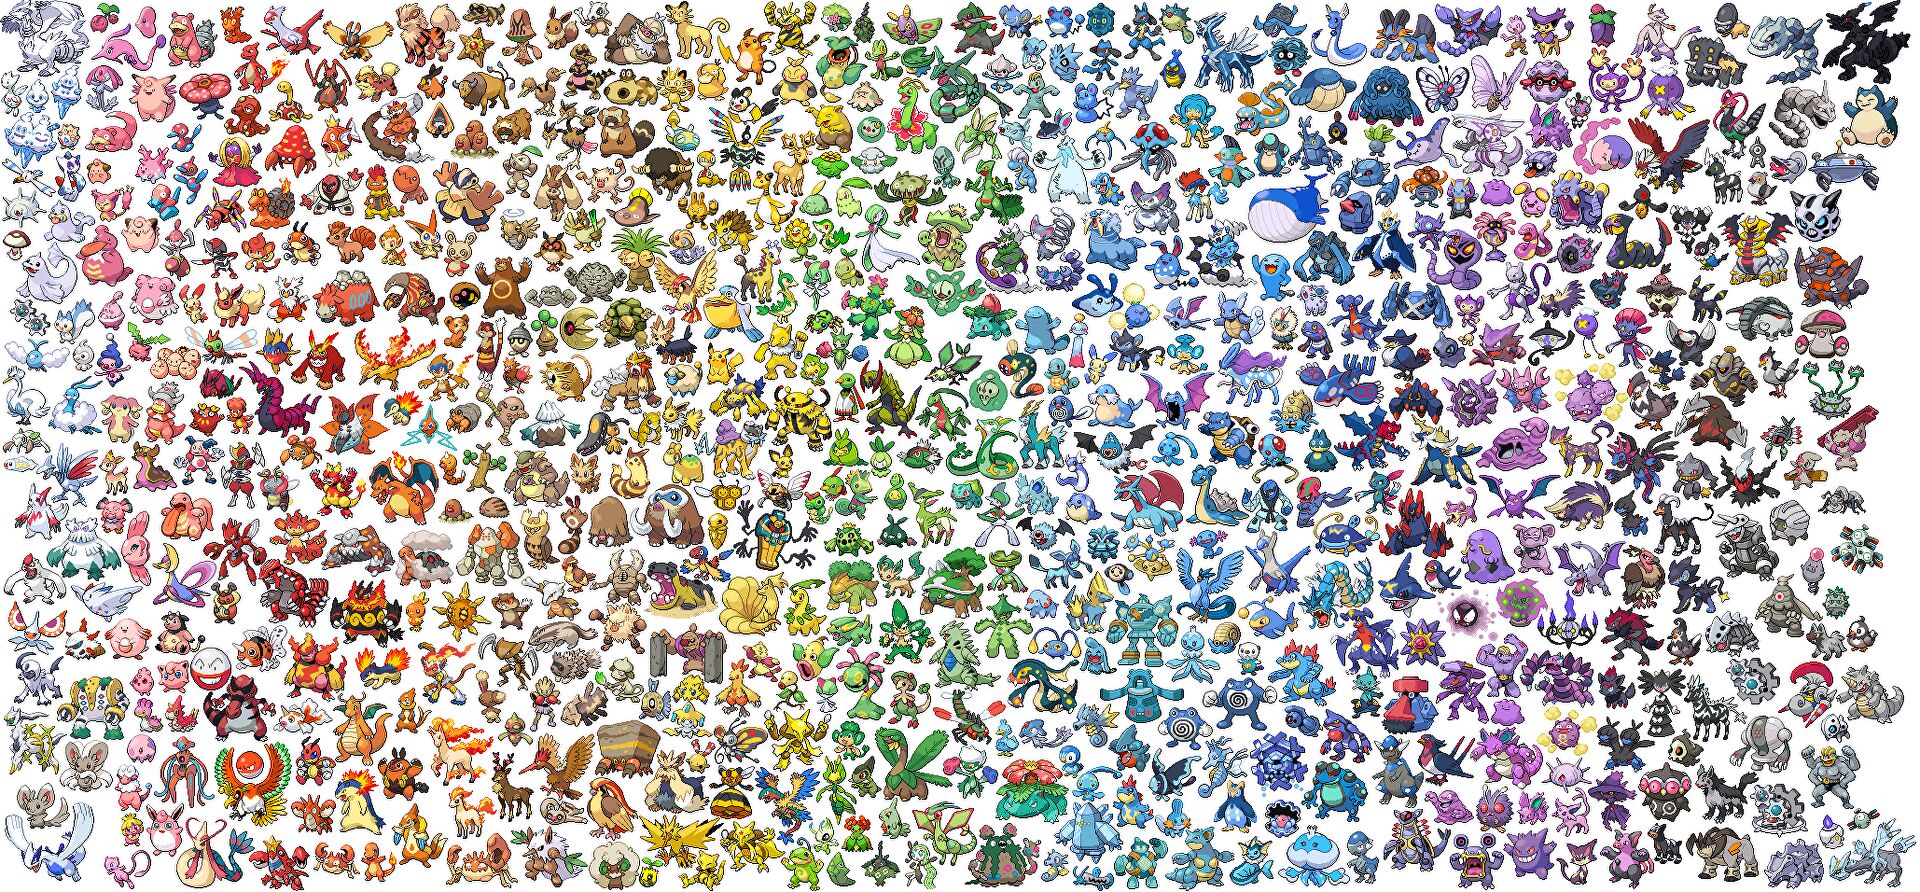 Op zoek naar shiny Pokémon tijdens het Sustainability-event? dit zijn je kansen